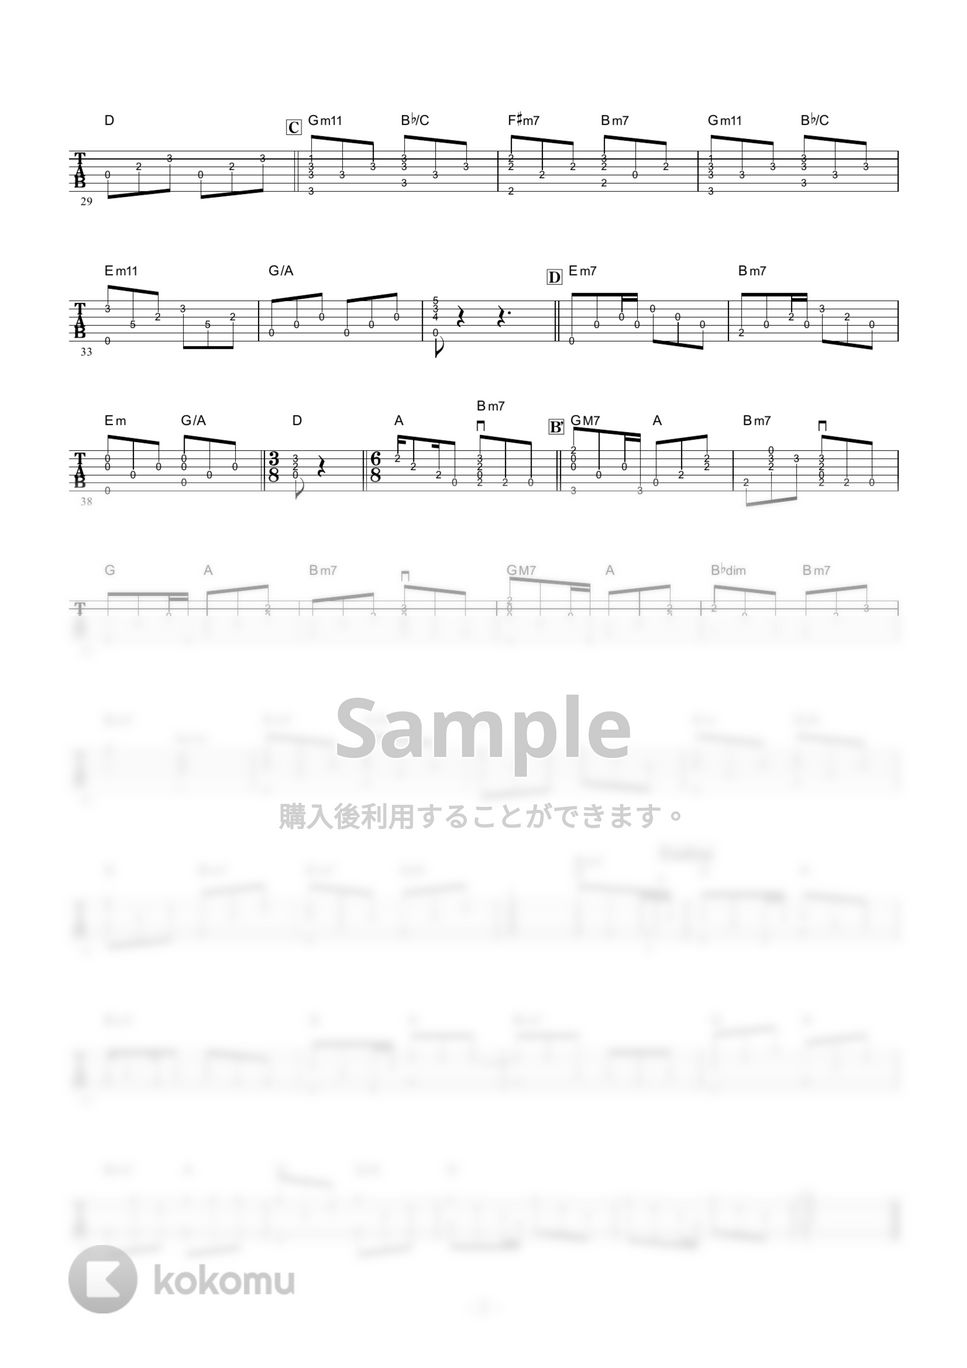 山下達郎 - 僕らの夏の夢 (ギター伴奏/イントロ・間奏ソロギター) by 伴奏屋TAB譜